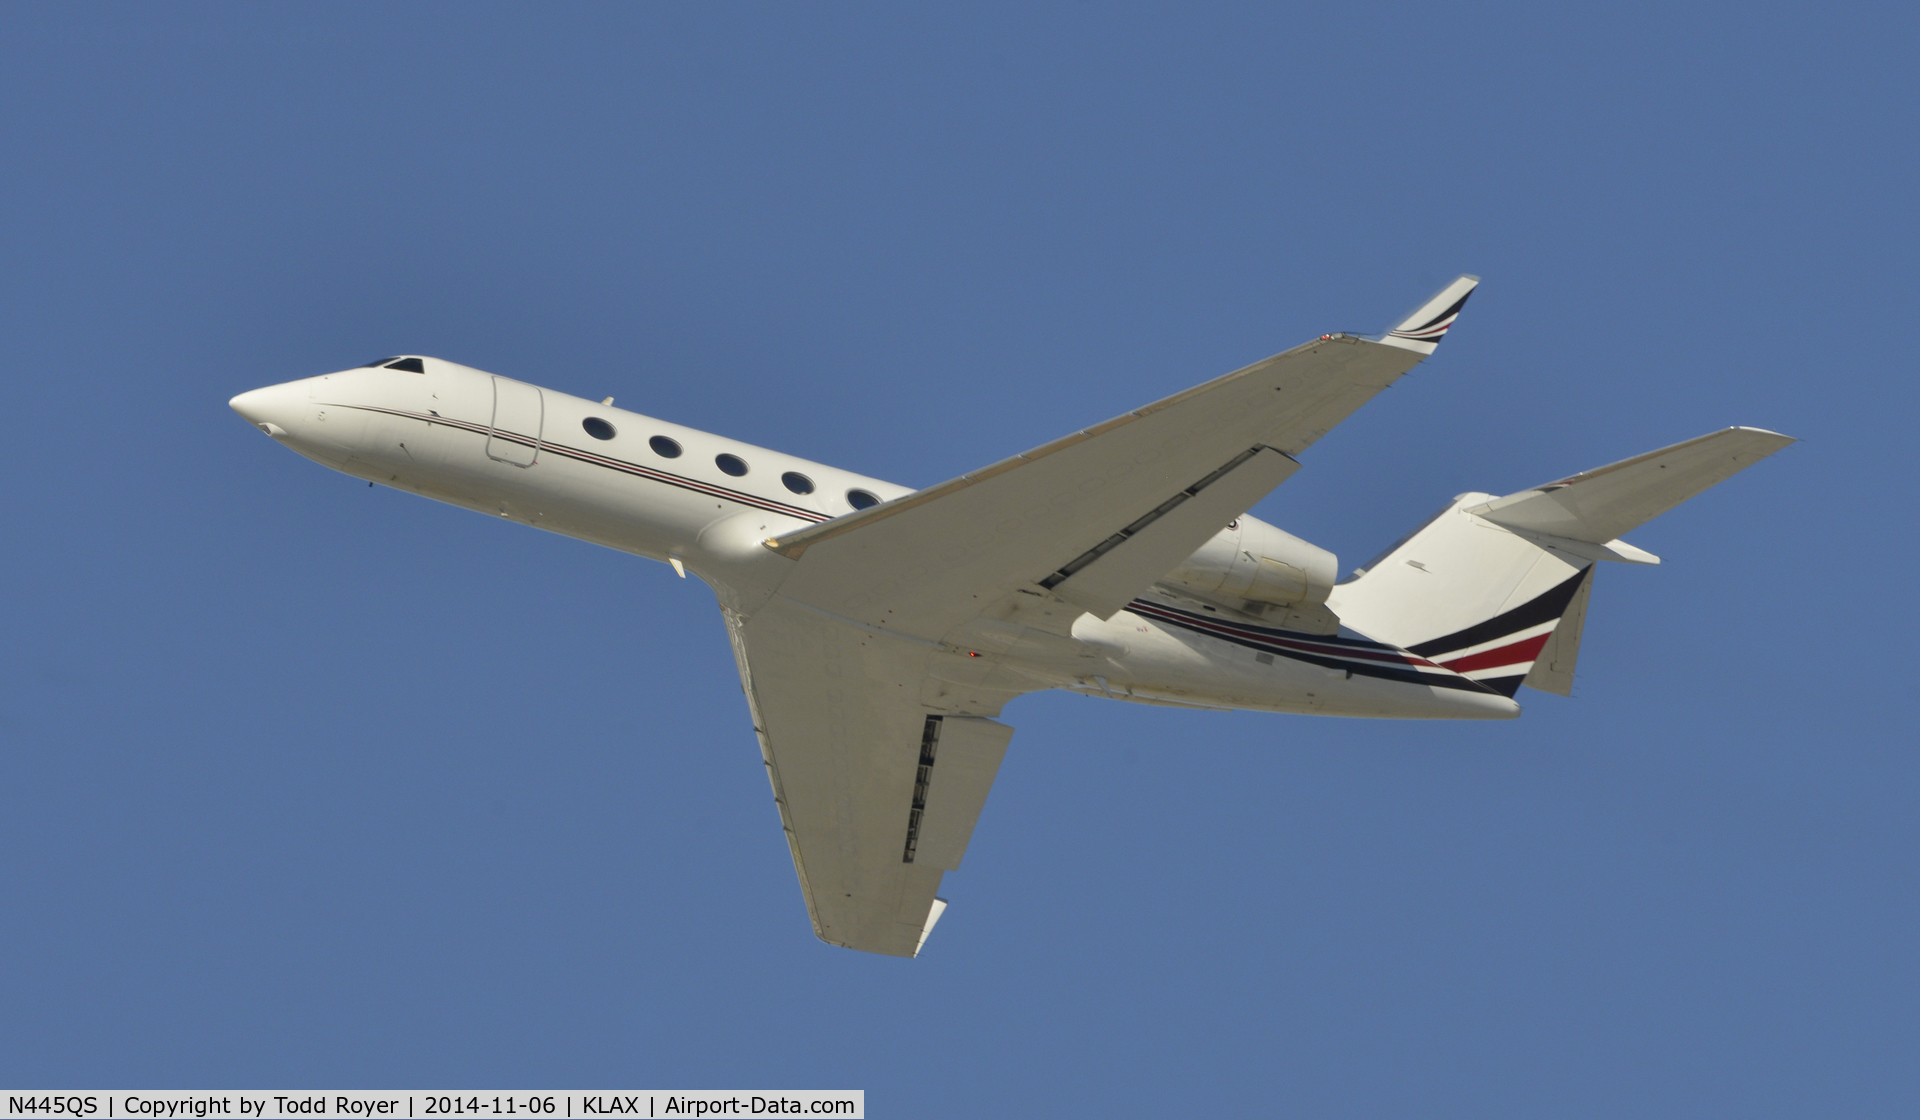 N445QS, 2006 Gulfstream Aerospace GIV-X (G450) C/N 4037, Departing LAX on 25R